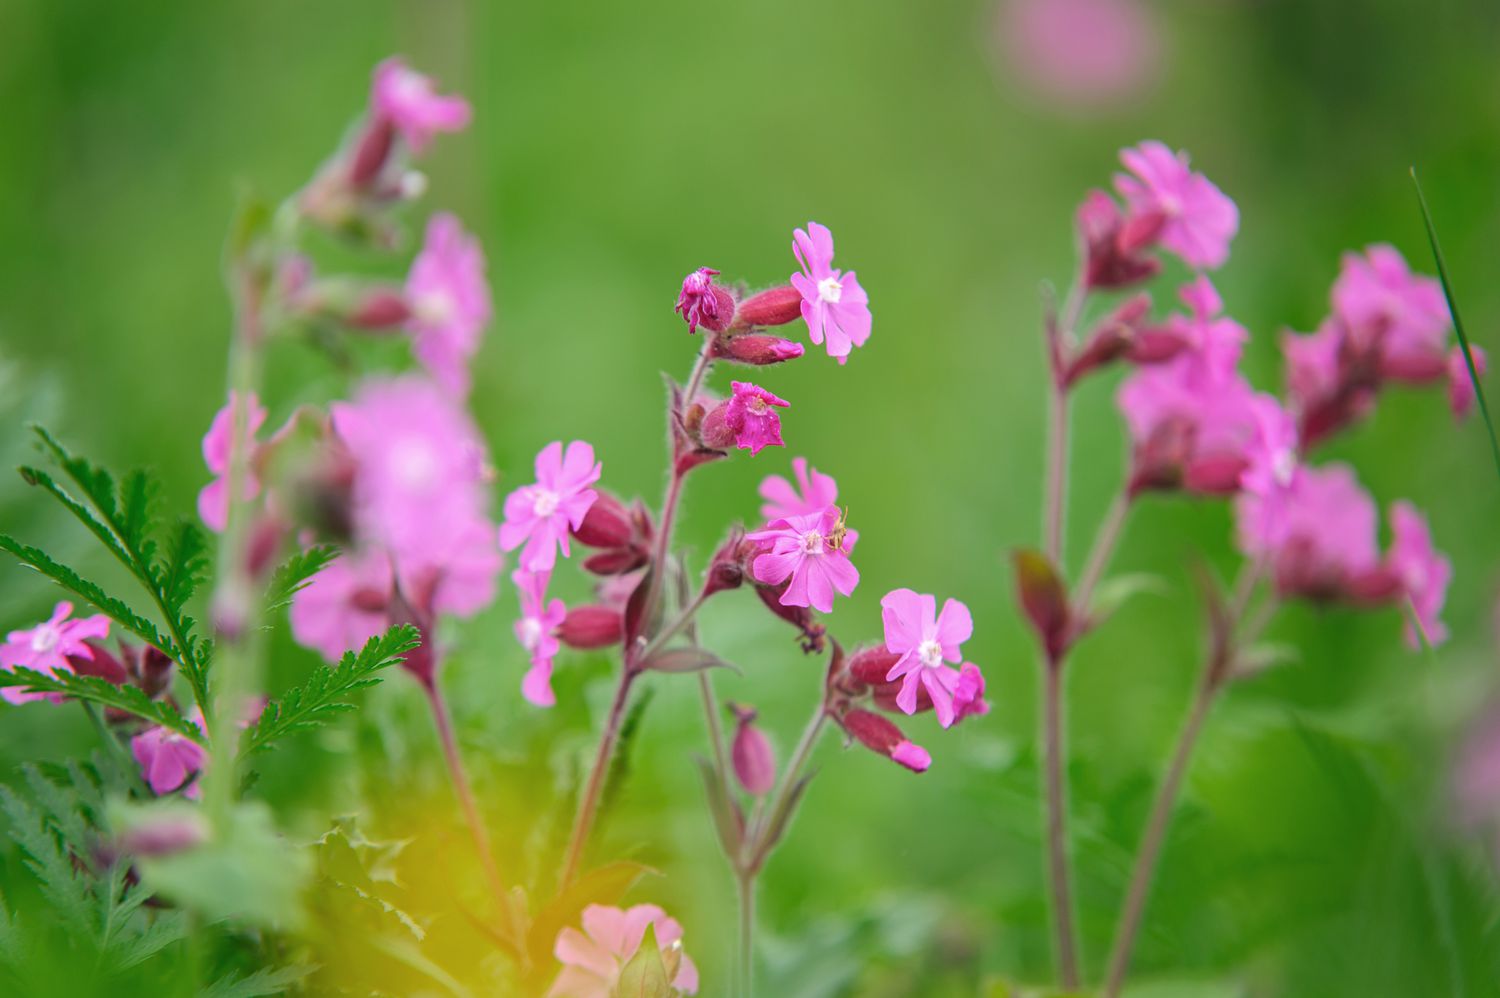 Rote Nelkenpflanze mit kleinen rosafarbenen sternförmigen Blüten an dünnen Stielen in Nahaufnahme